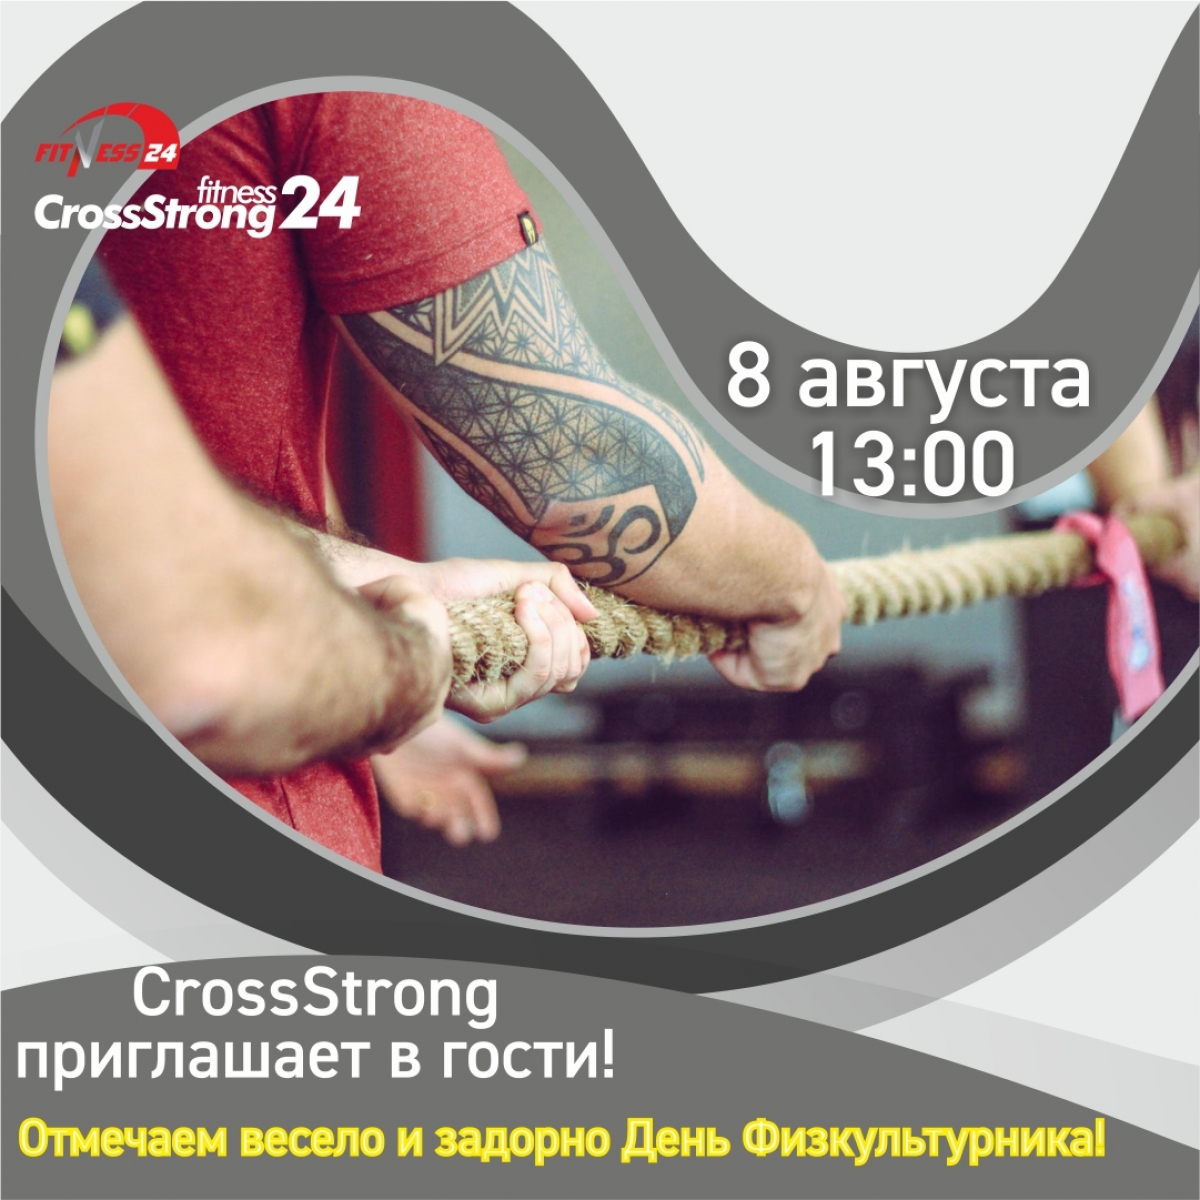  8 августа День Физкультурника в CrossStrong!